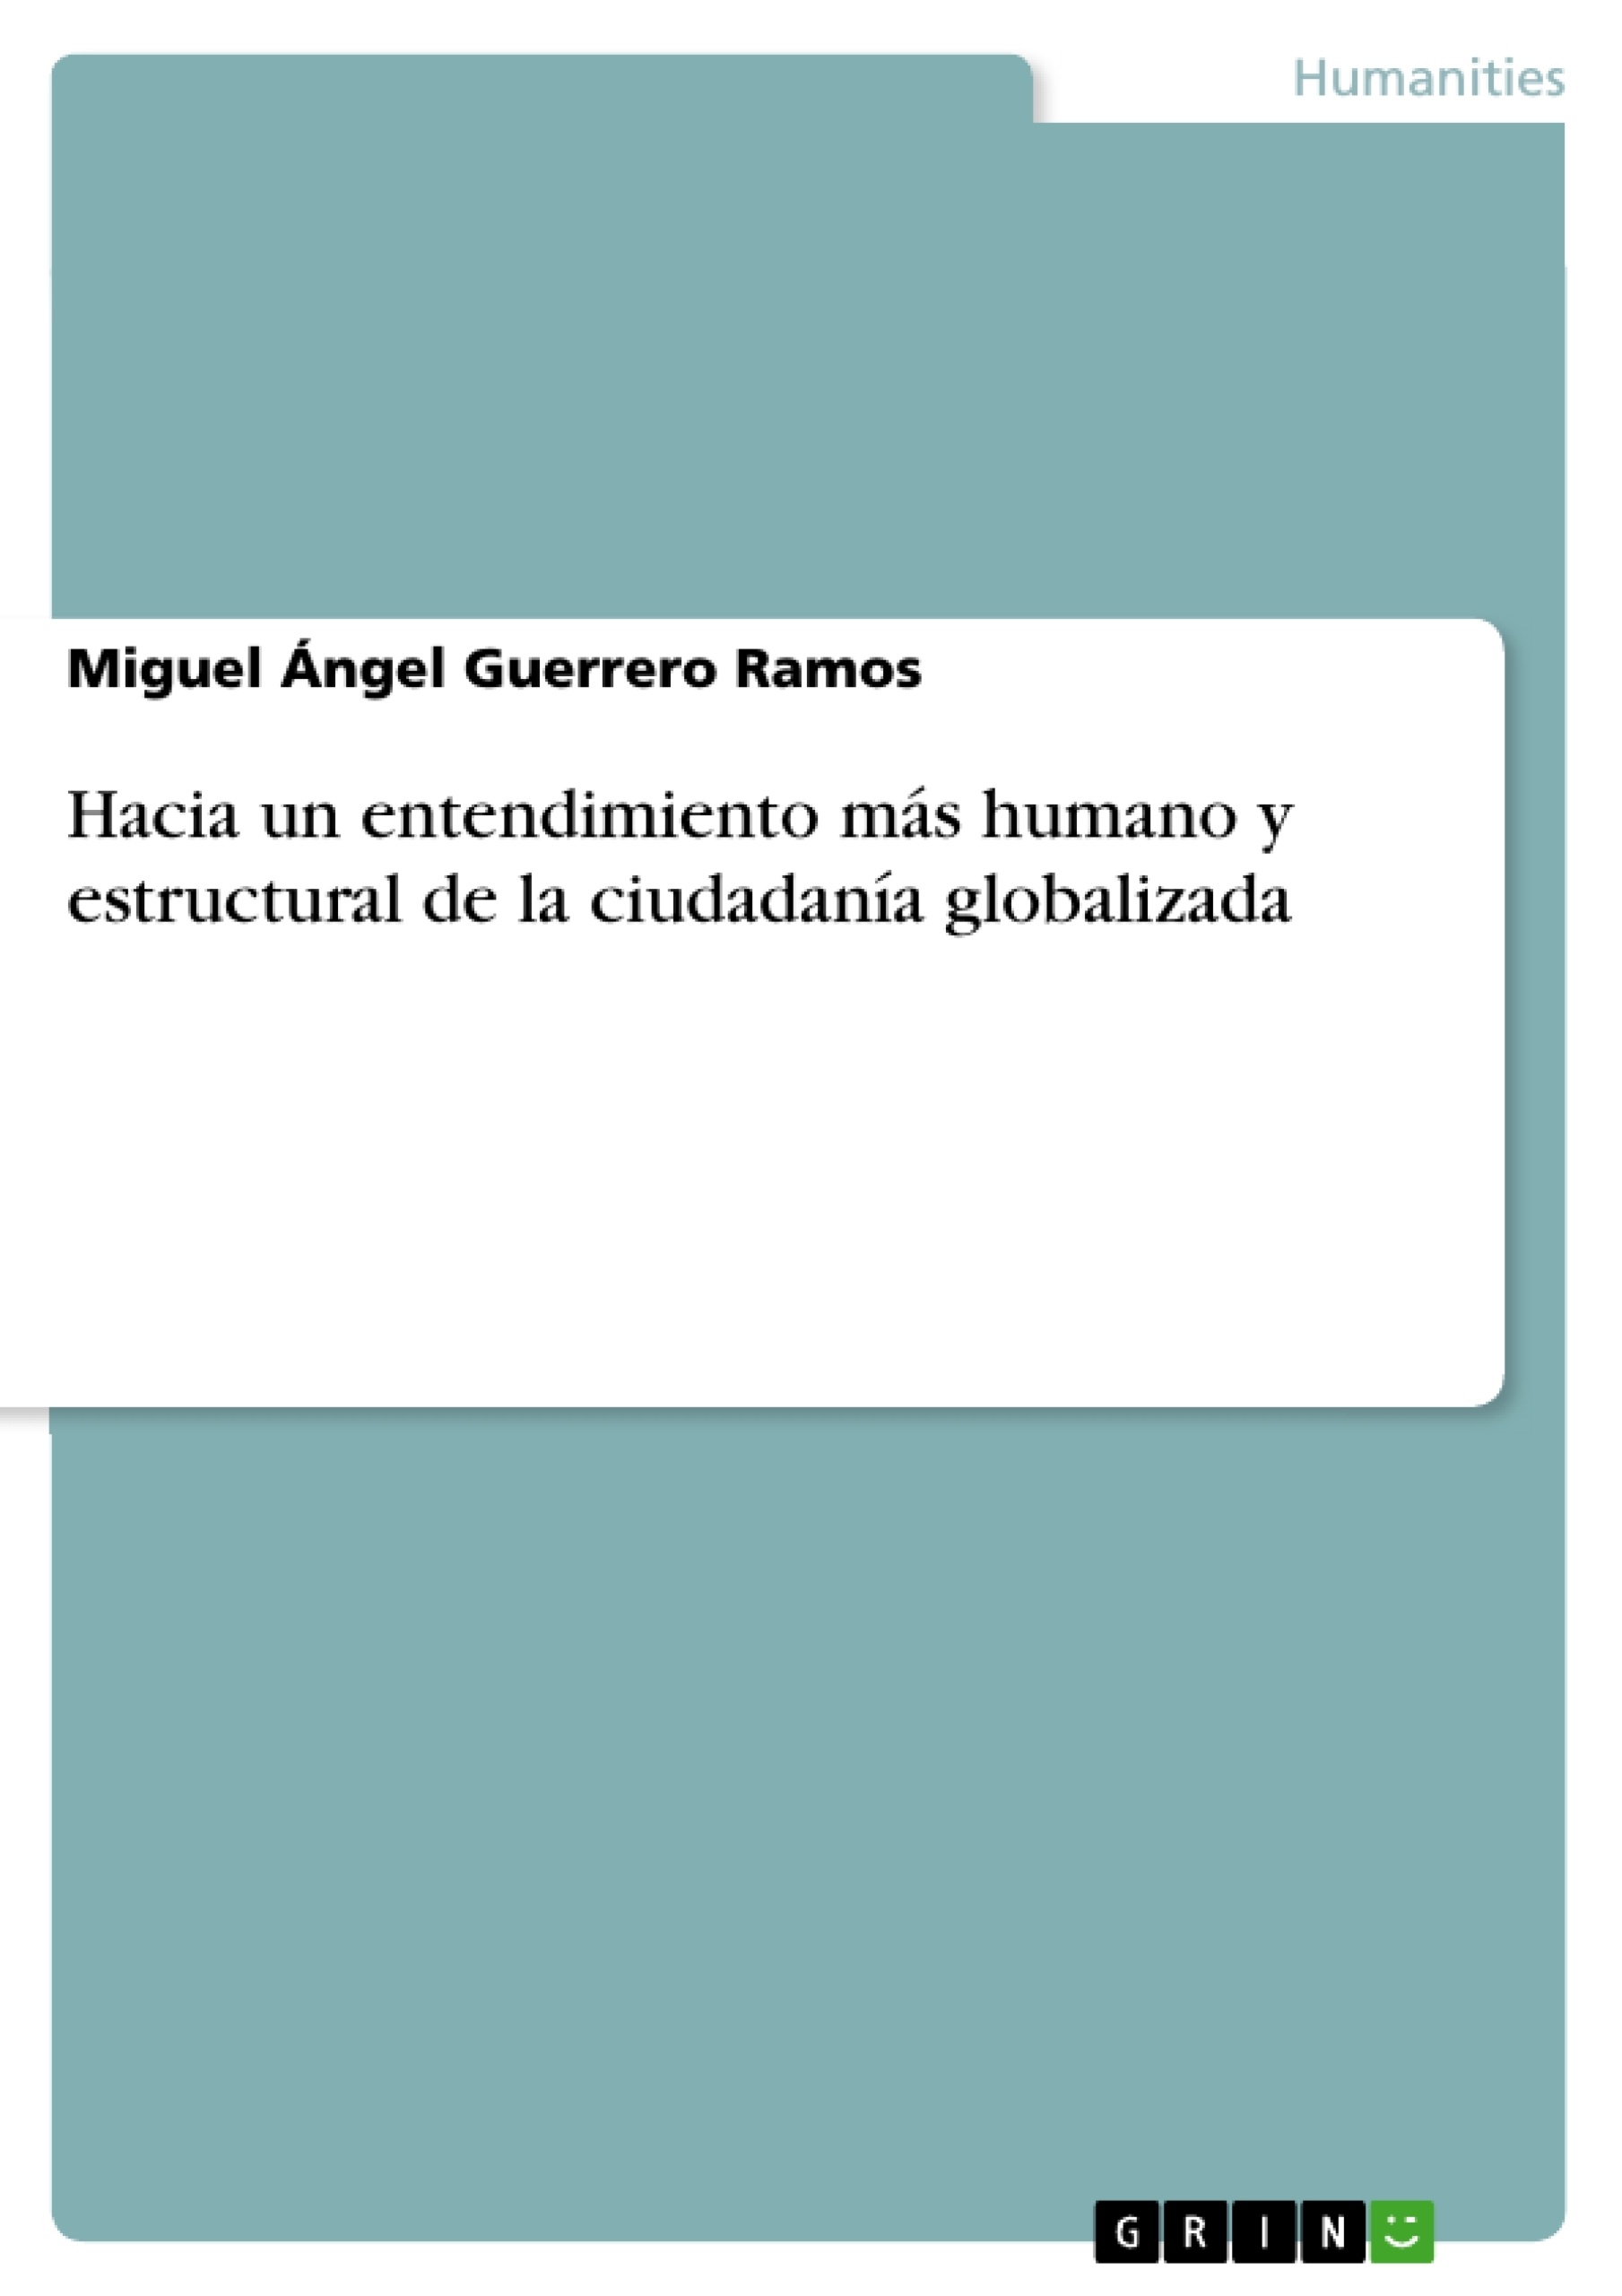 Título: Hacia un entendimiento más humano y estructural de la ciudadanía globalizada